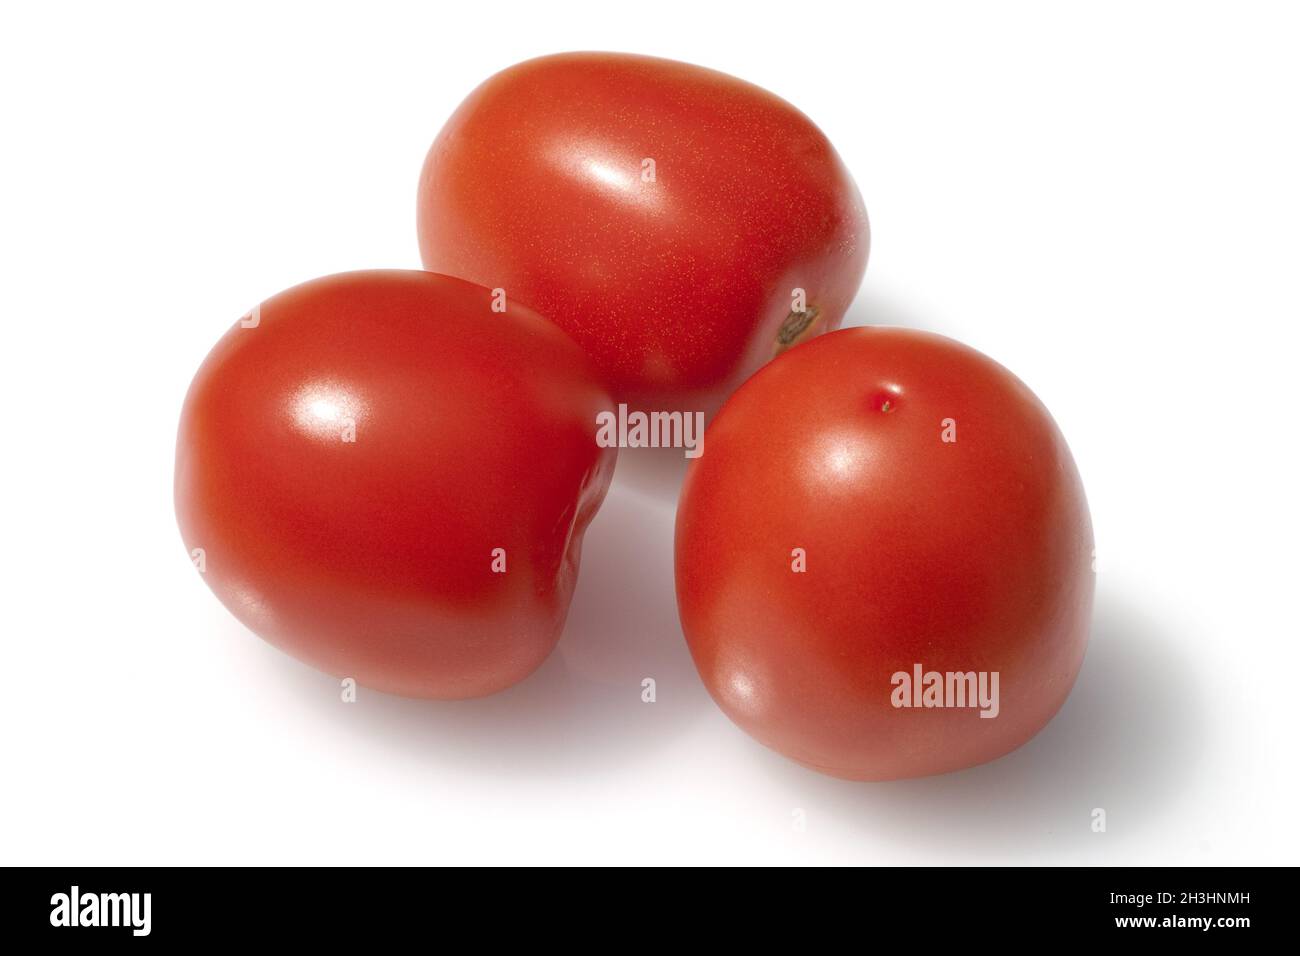 Roma-Tomaten, Romatomaten, Lycopersicon esculentum; Stock Photo